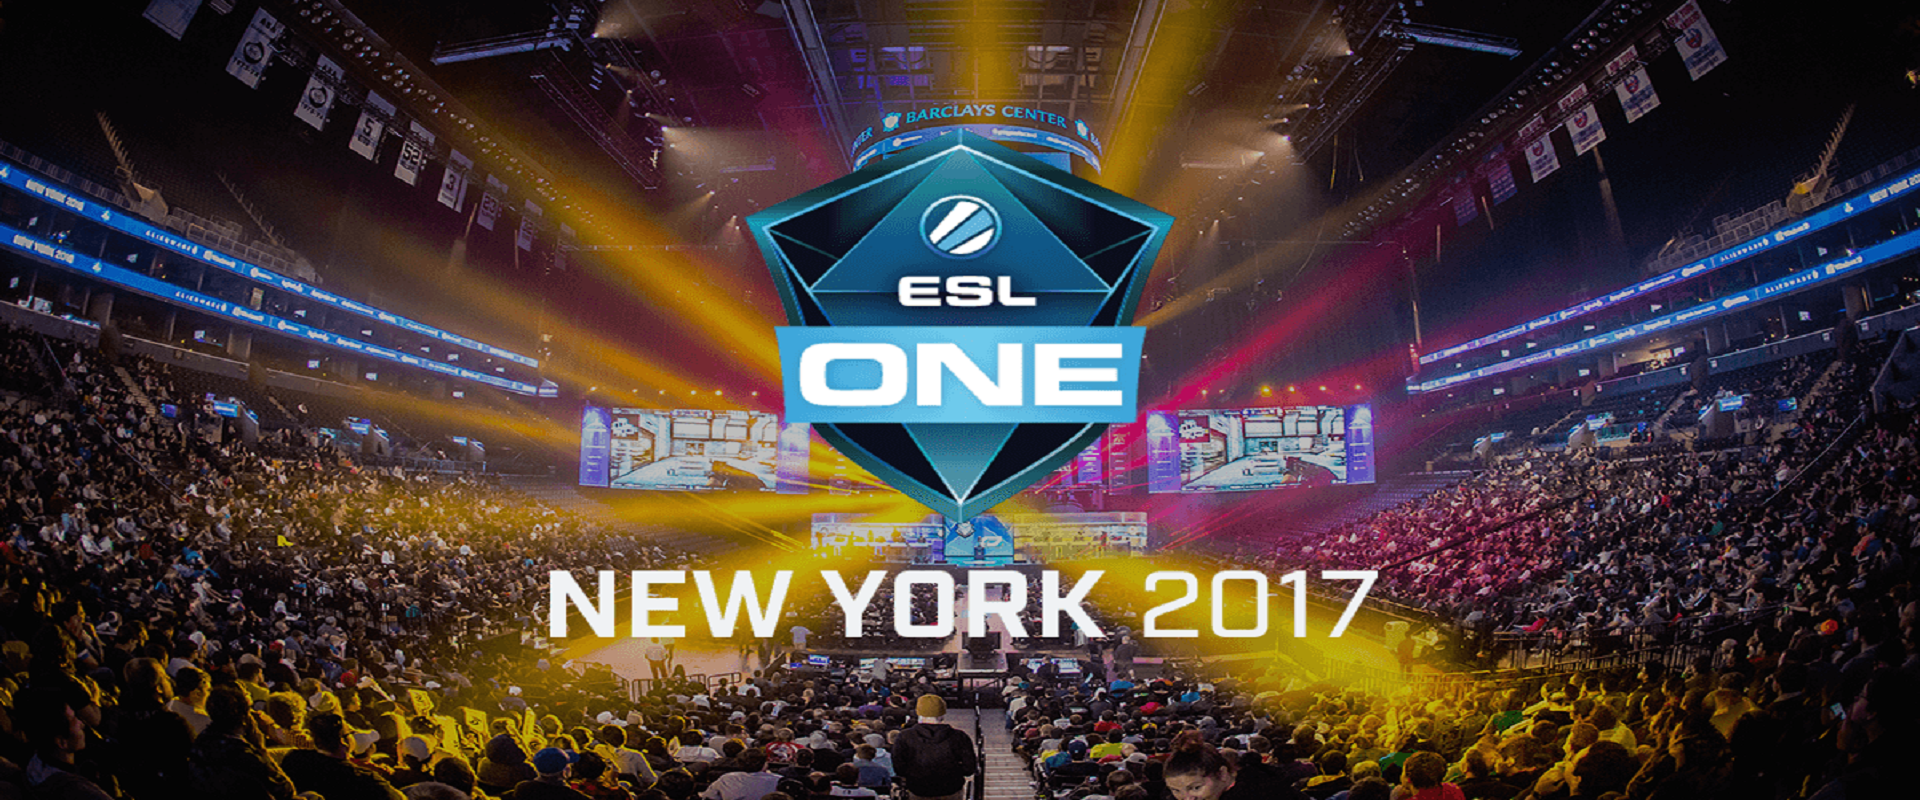 ESL ONE New York: 2017-ben ismét összecsapnak a legjobbak!